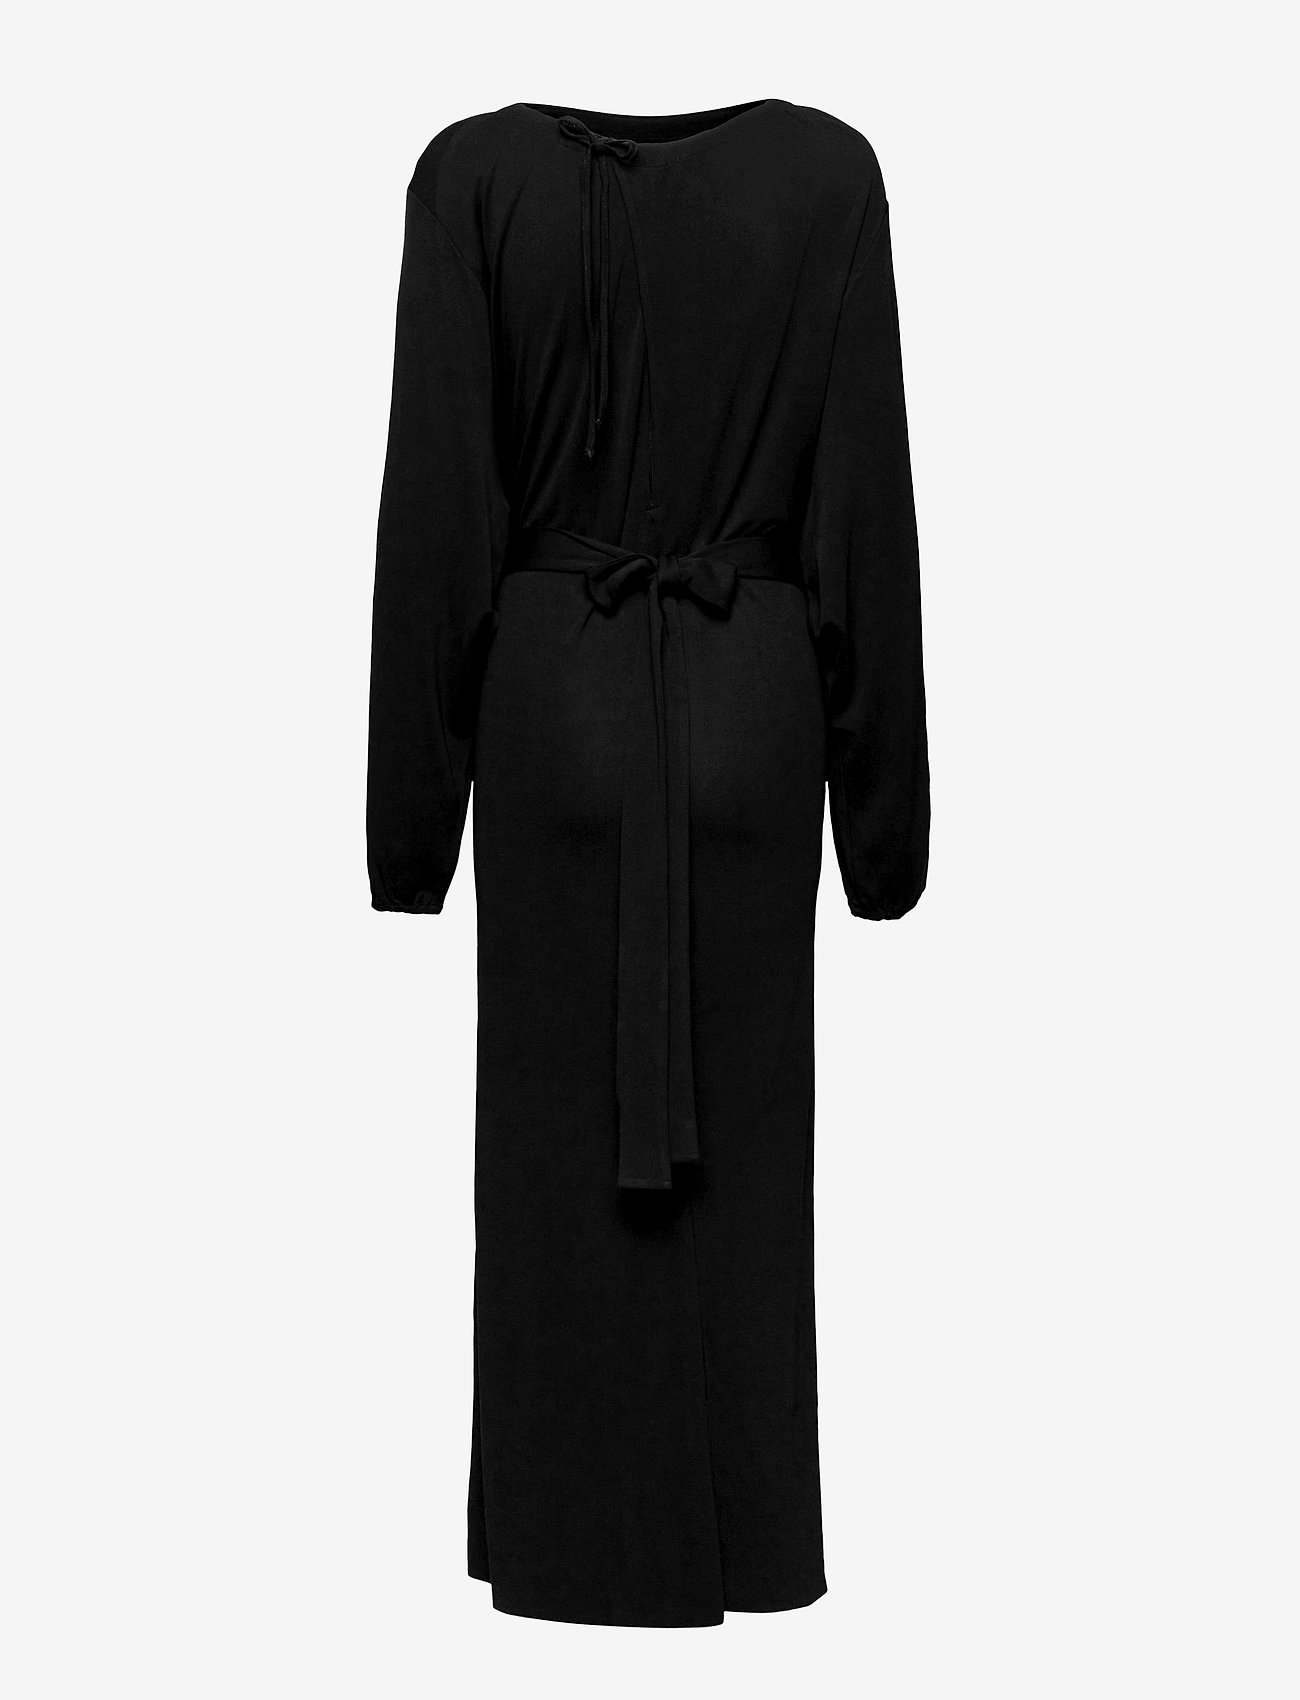 Filippa K - Leia Dress - festtøj til outletpriser - black - 1